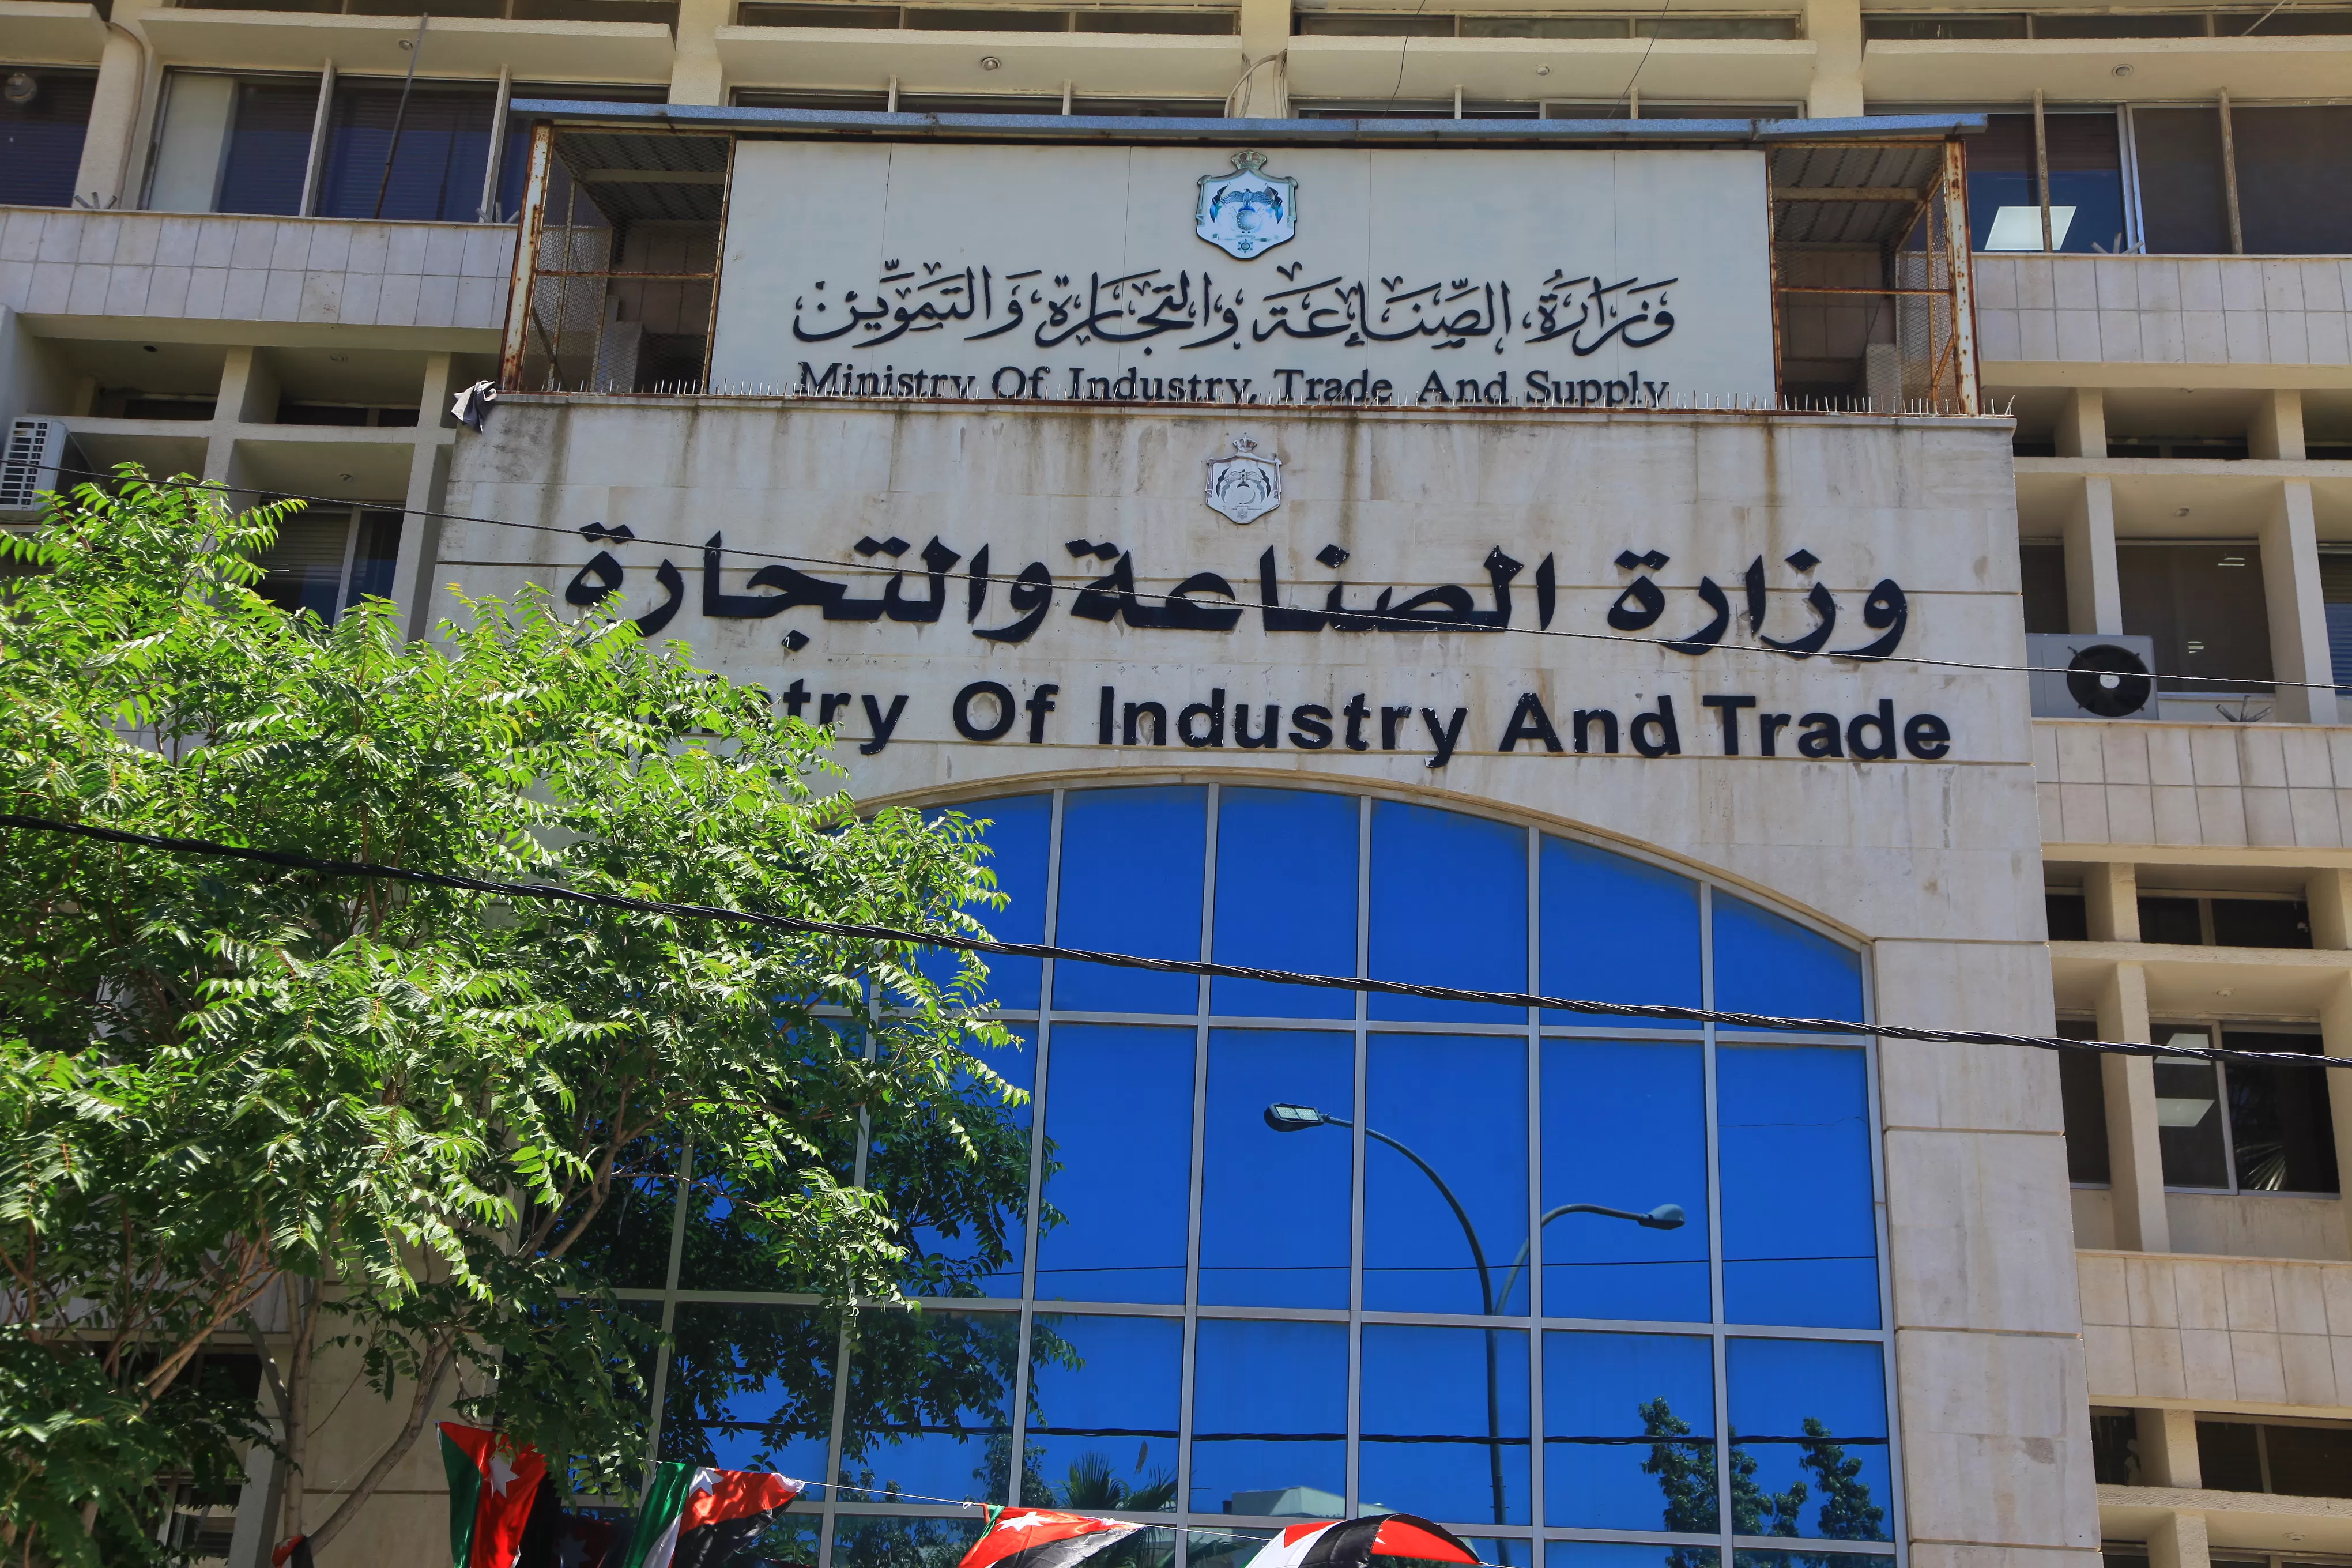 مدار الساعة, أخبار اقتصادية,وزارة الصناعة والتجارة والتموين,المؤسسة الأردنية لتطوير المشاريع الاقتصادية,الاردن,الأردن,اقتصاد